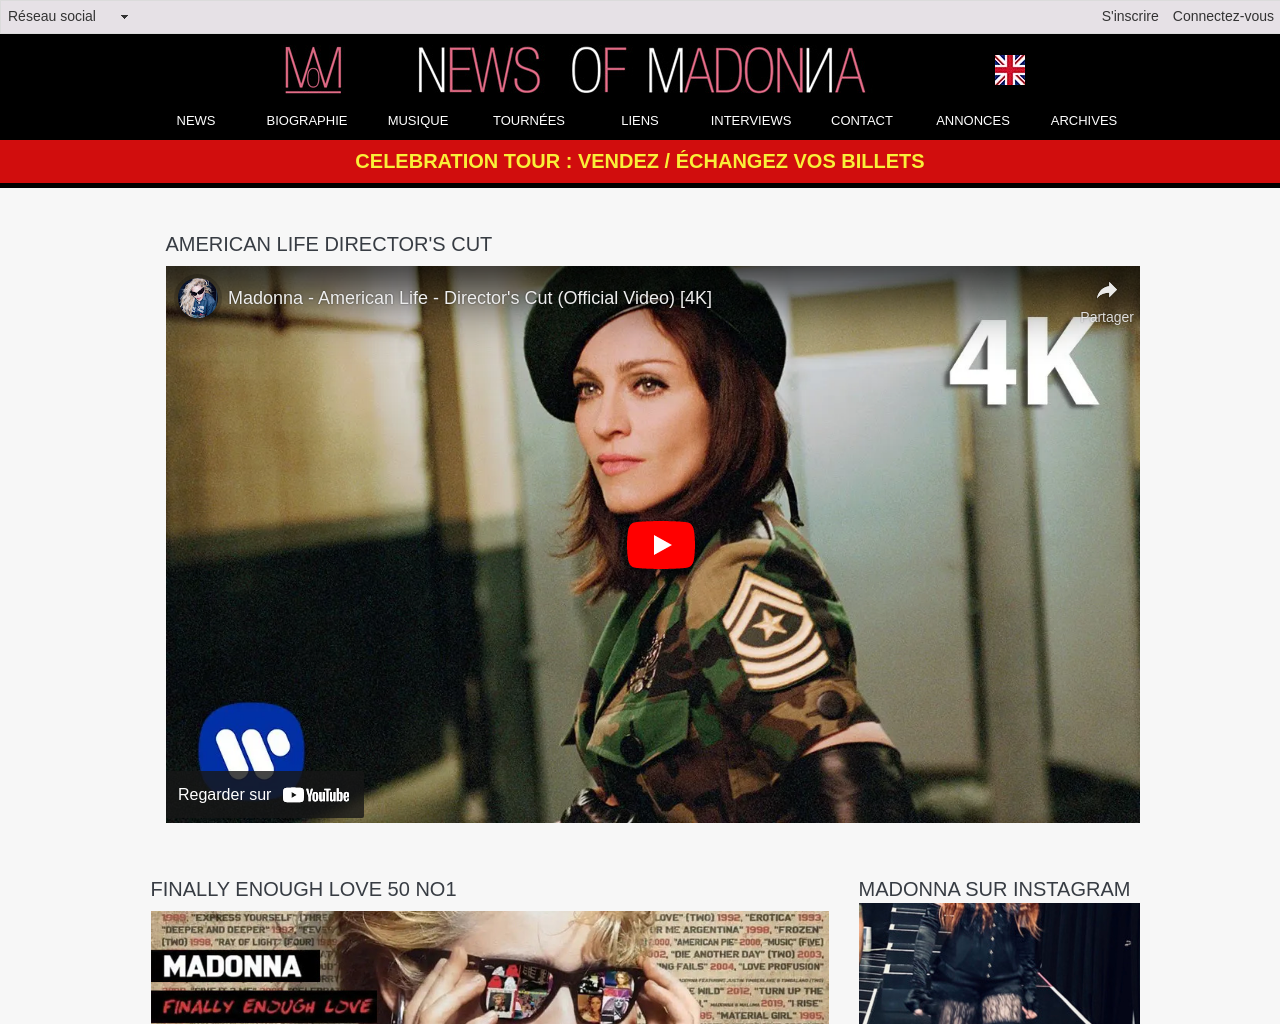 www.news-of-madonna.com